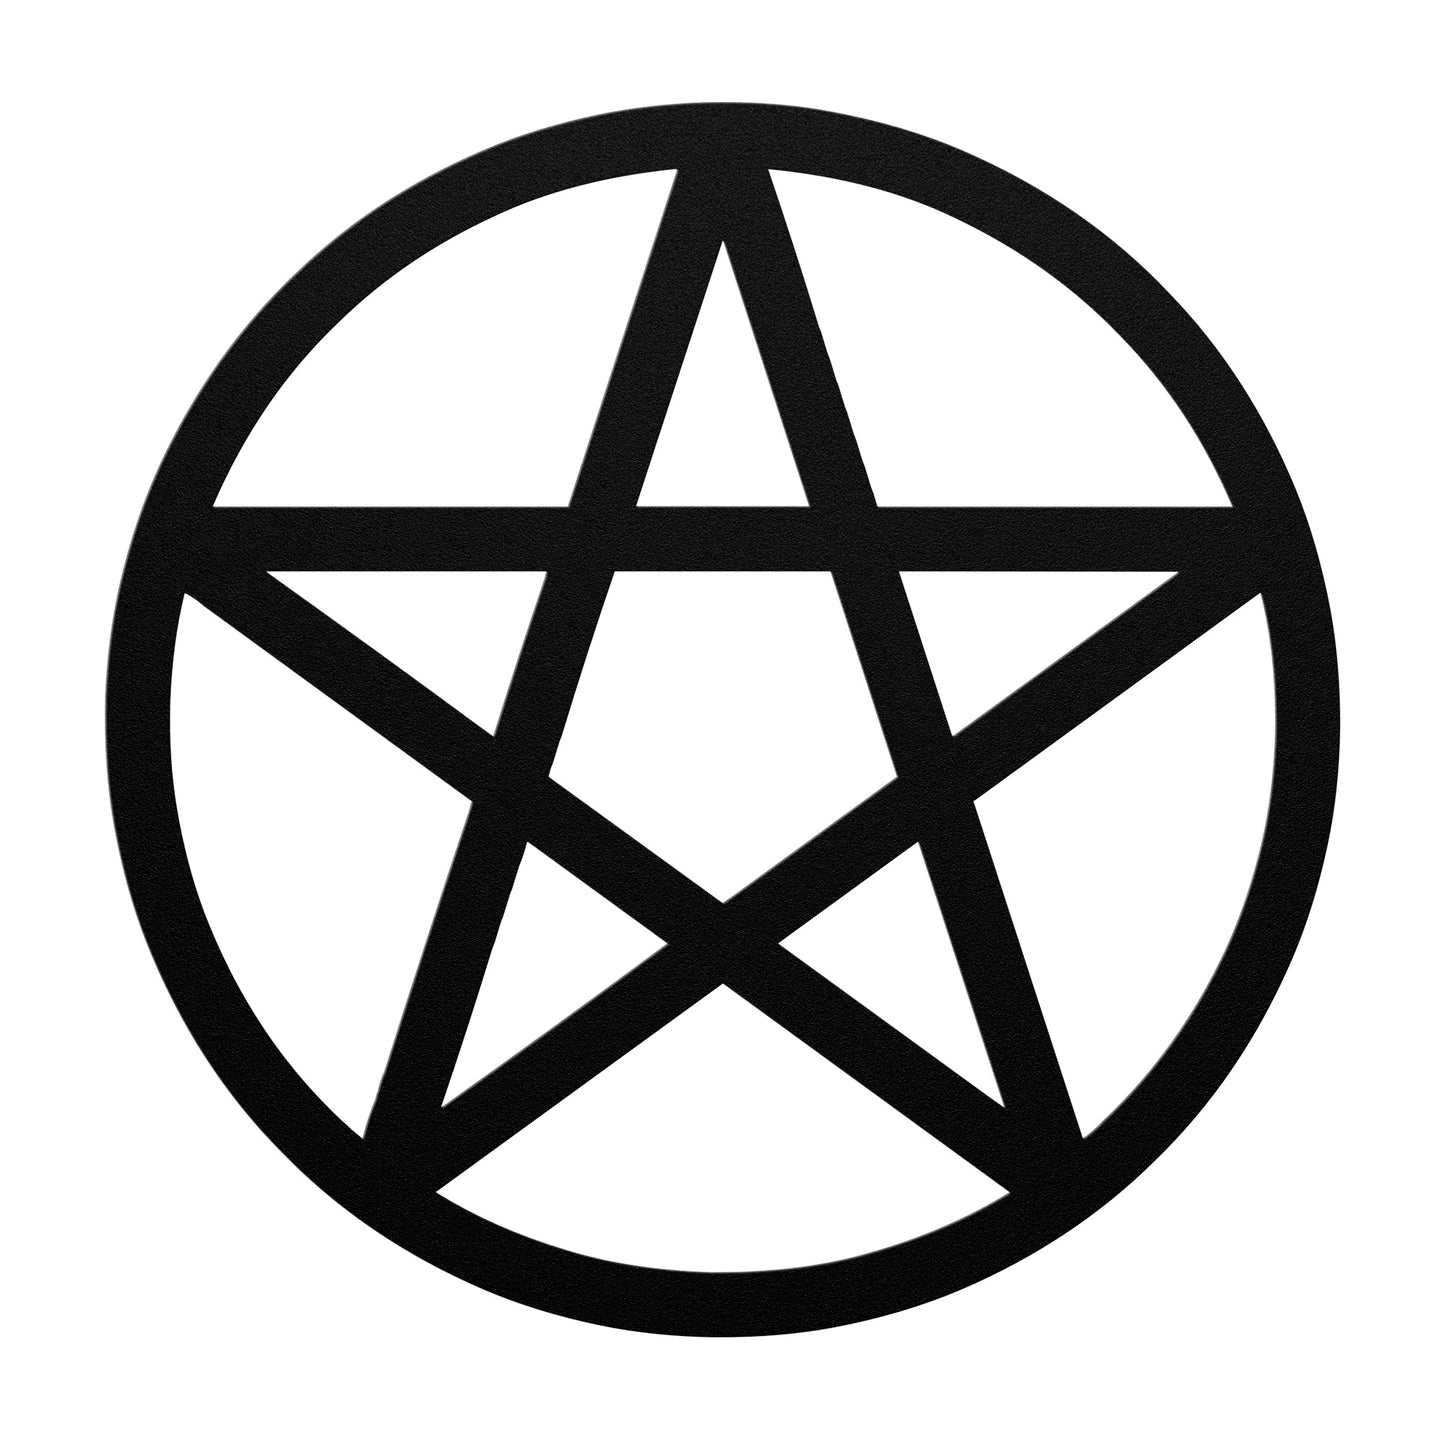 The Pentagram - Metal Wall Art